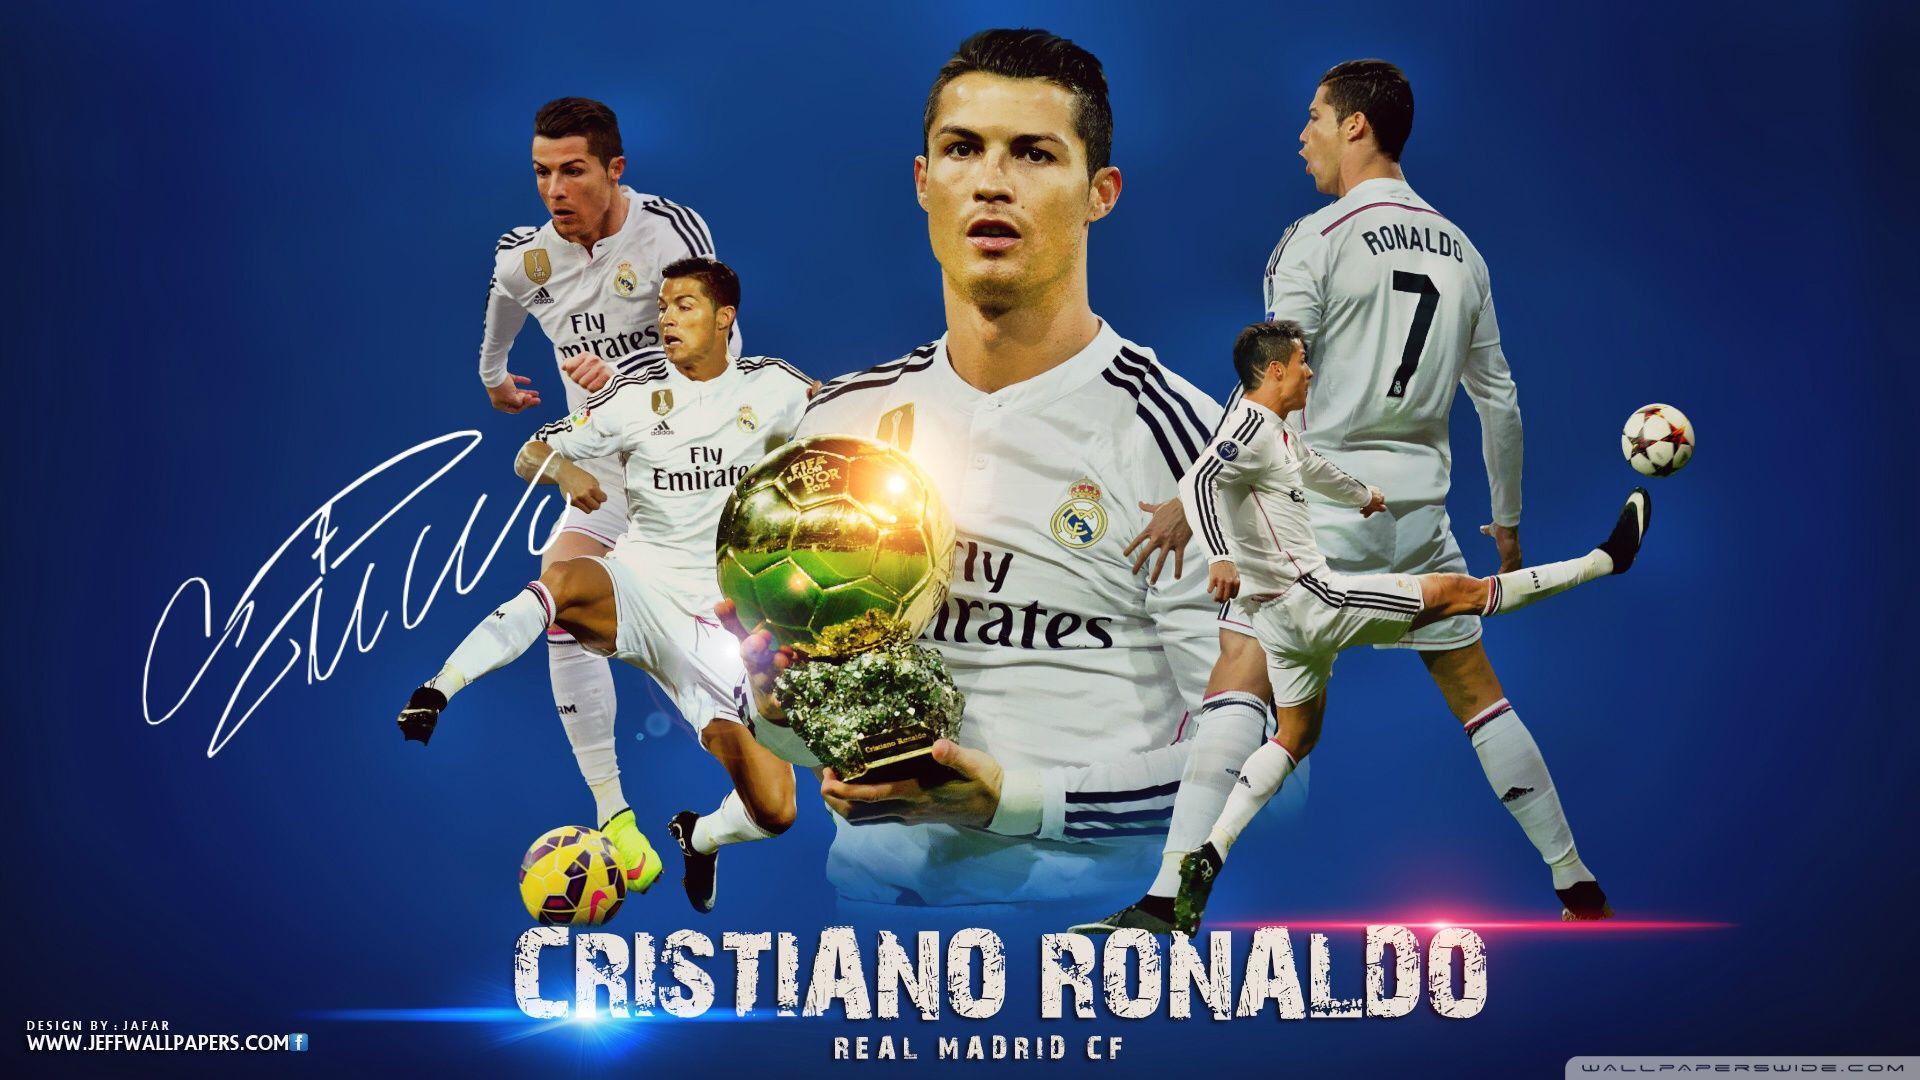 Cristiano Ronaldo Vs Messi Wallpaper 2015